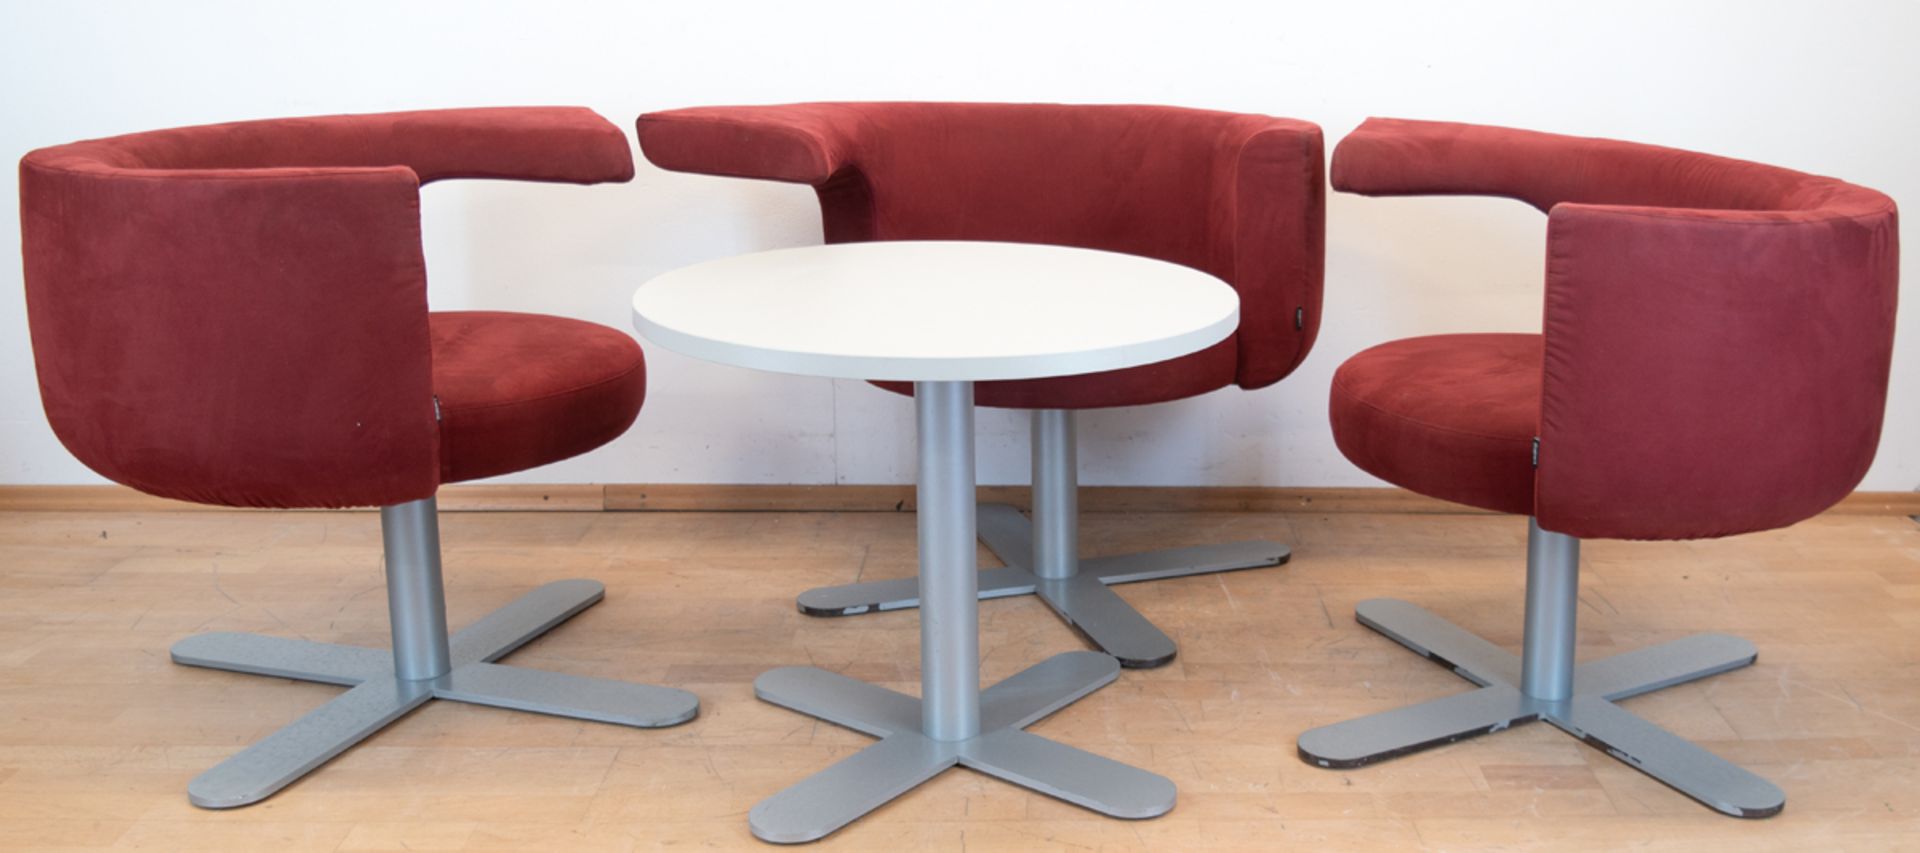 Designer-Sitzgruppe, bestehend aus 3 Sessel und Tisch, von Otto Zape für Drabert, 1980er Jahre, Met